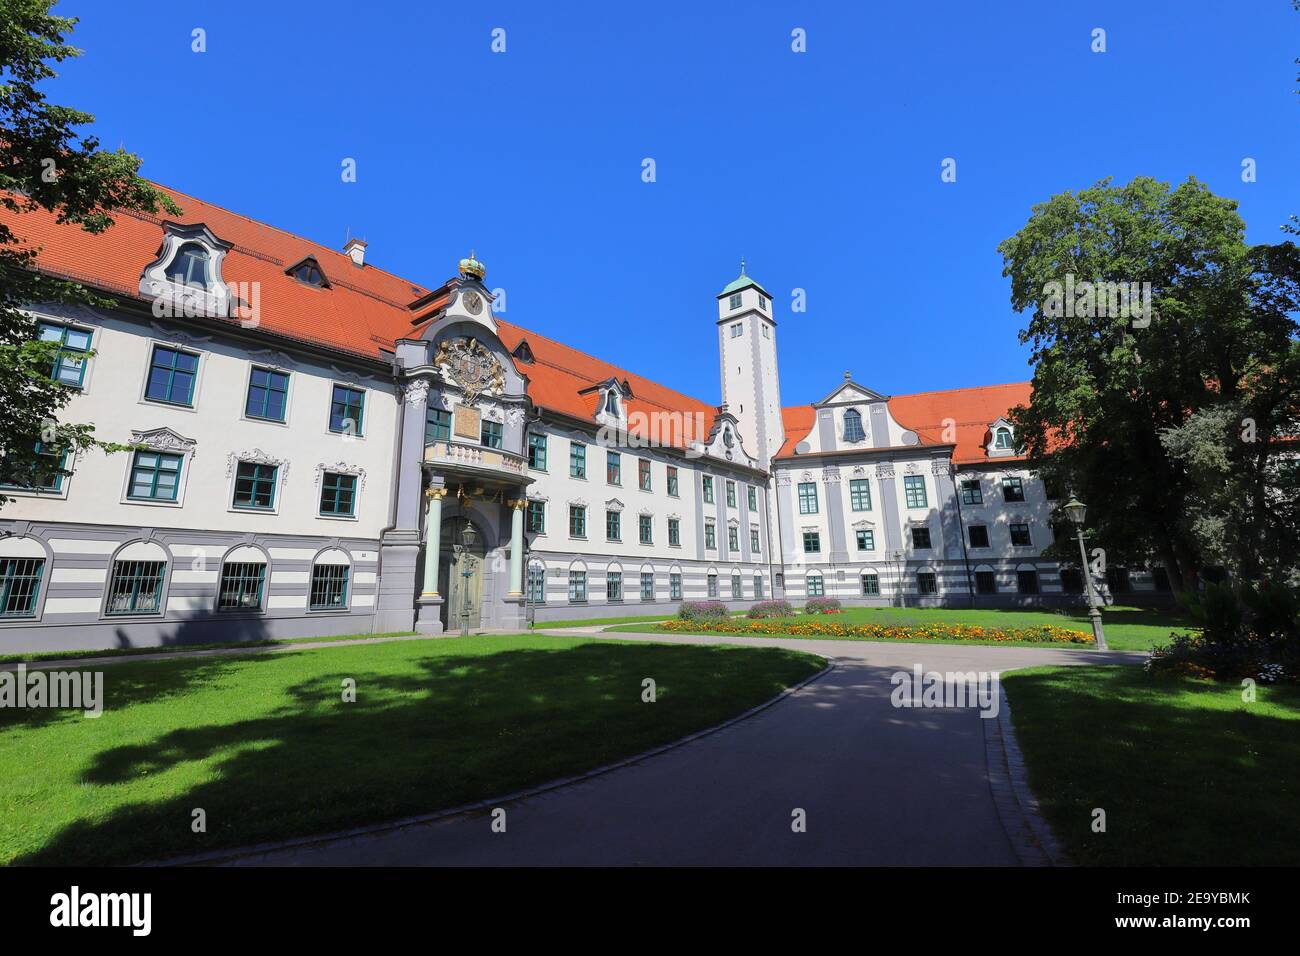 ALEMANIA, AUGSBURGO - 18 DE AGOSTO de 2019: Edificios del Gobierno de Swabia en Augsburgo (antigua residencia del Príncipe-Obispo) Foto de stock